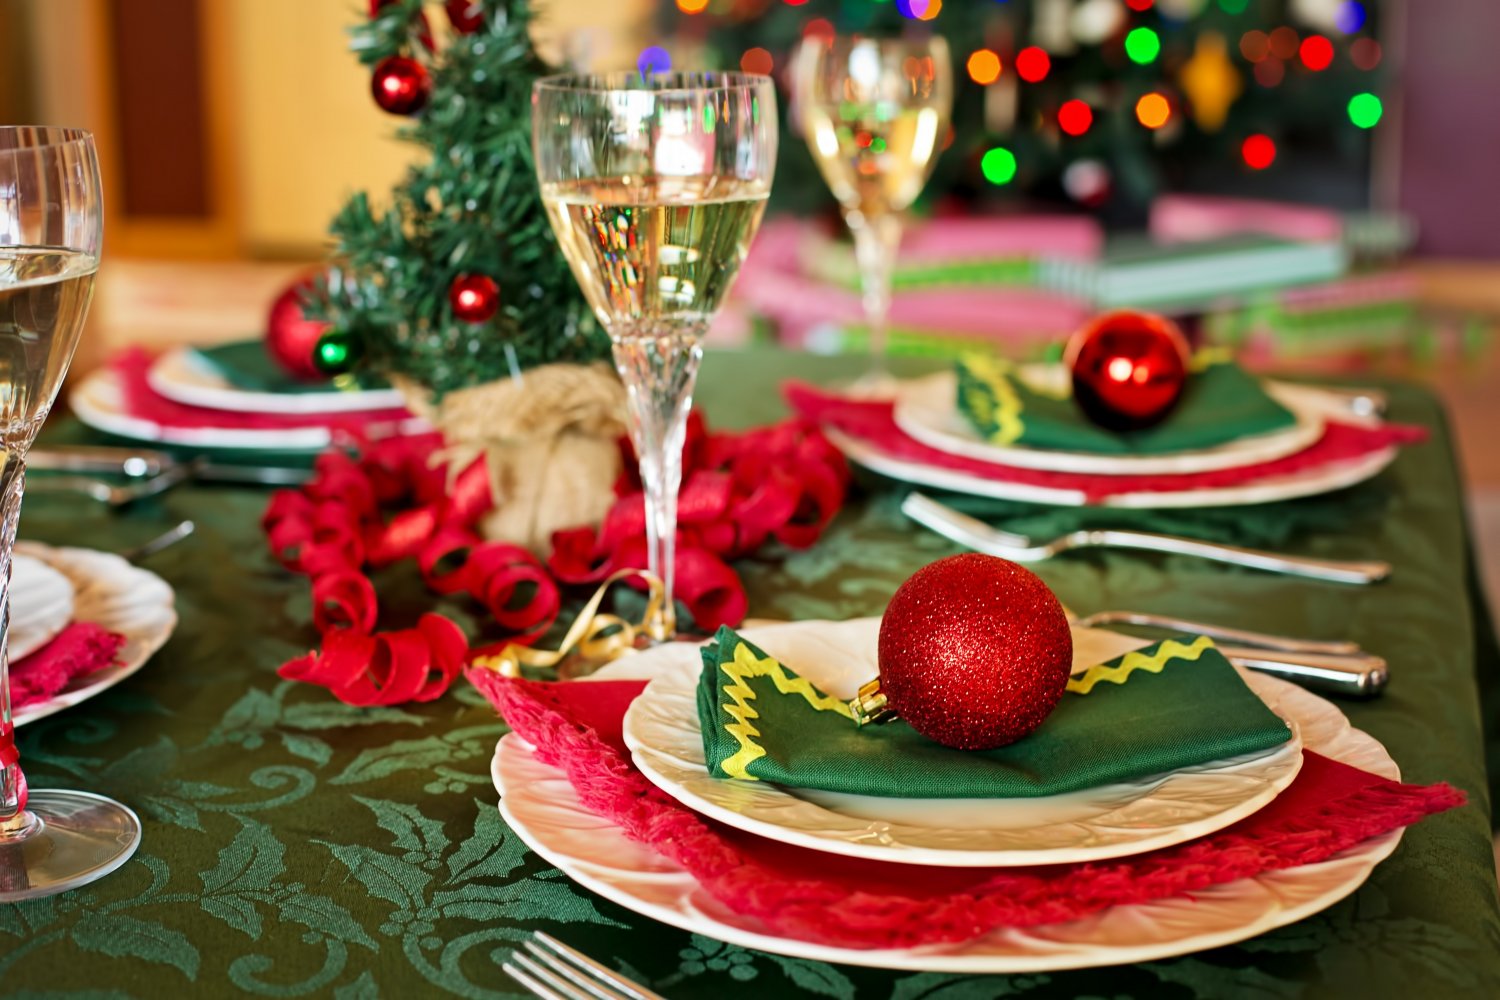 ¿Dónde encontrar los mejores banquetes navideños? Estas son las opciones que recomienda Doctor Pichangas